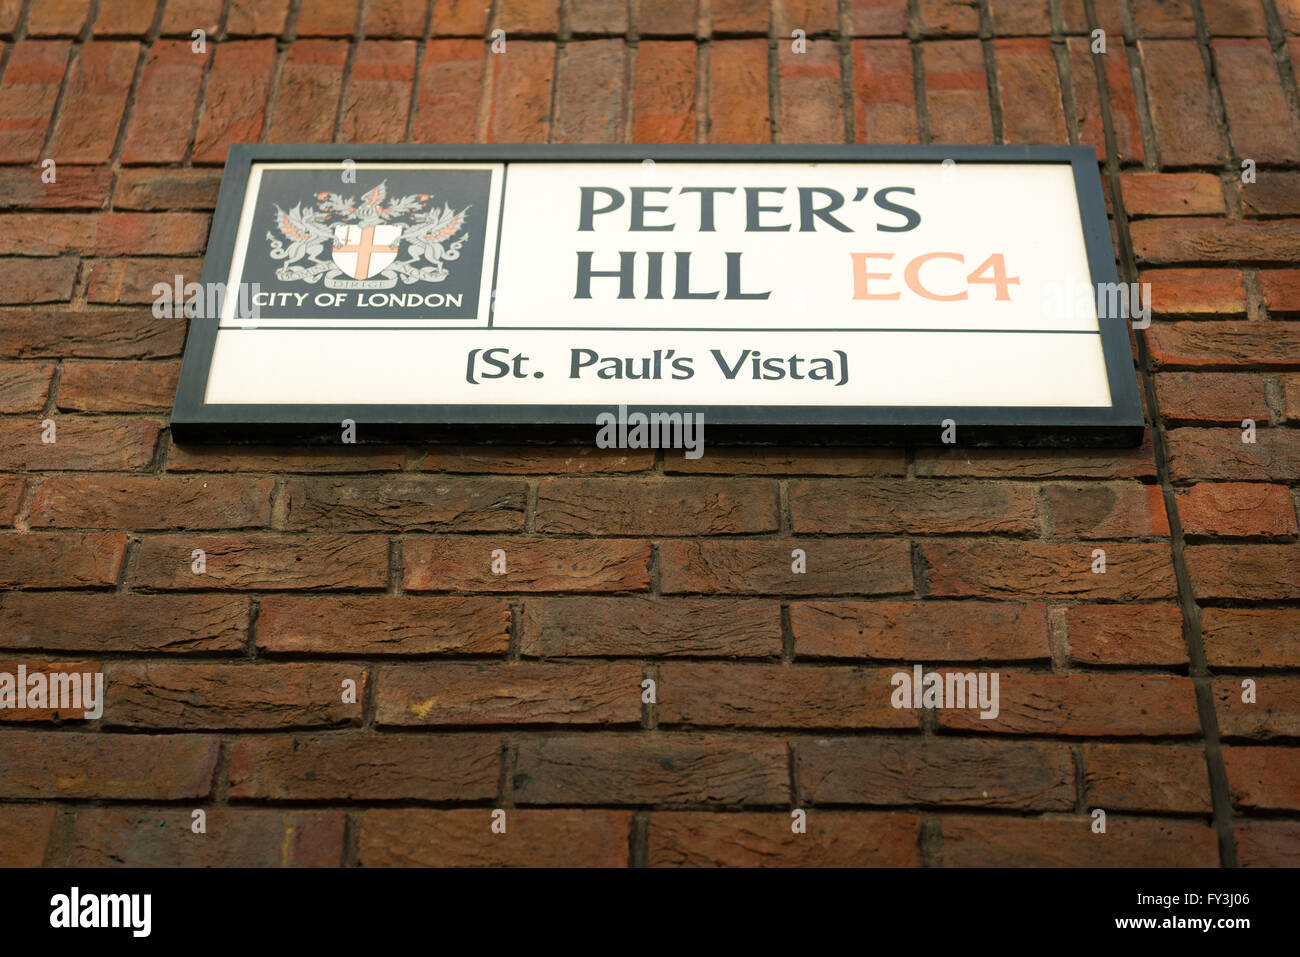 London street segno per Peter's Hill CE4. San Paolo vista. Foto Stock